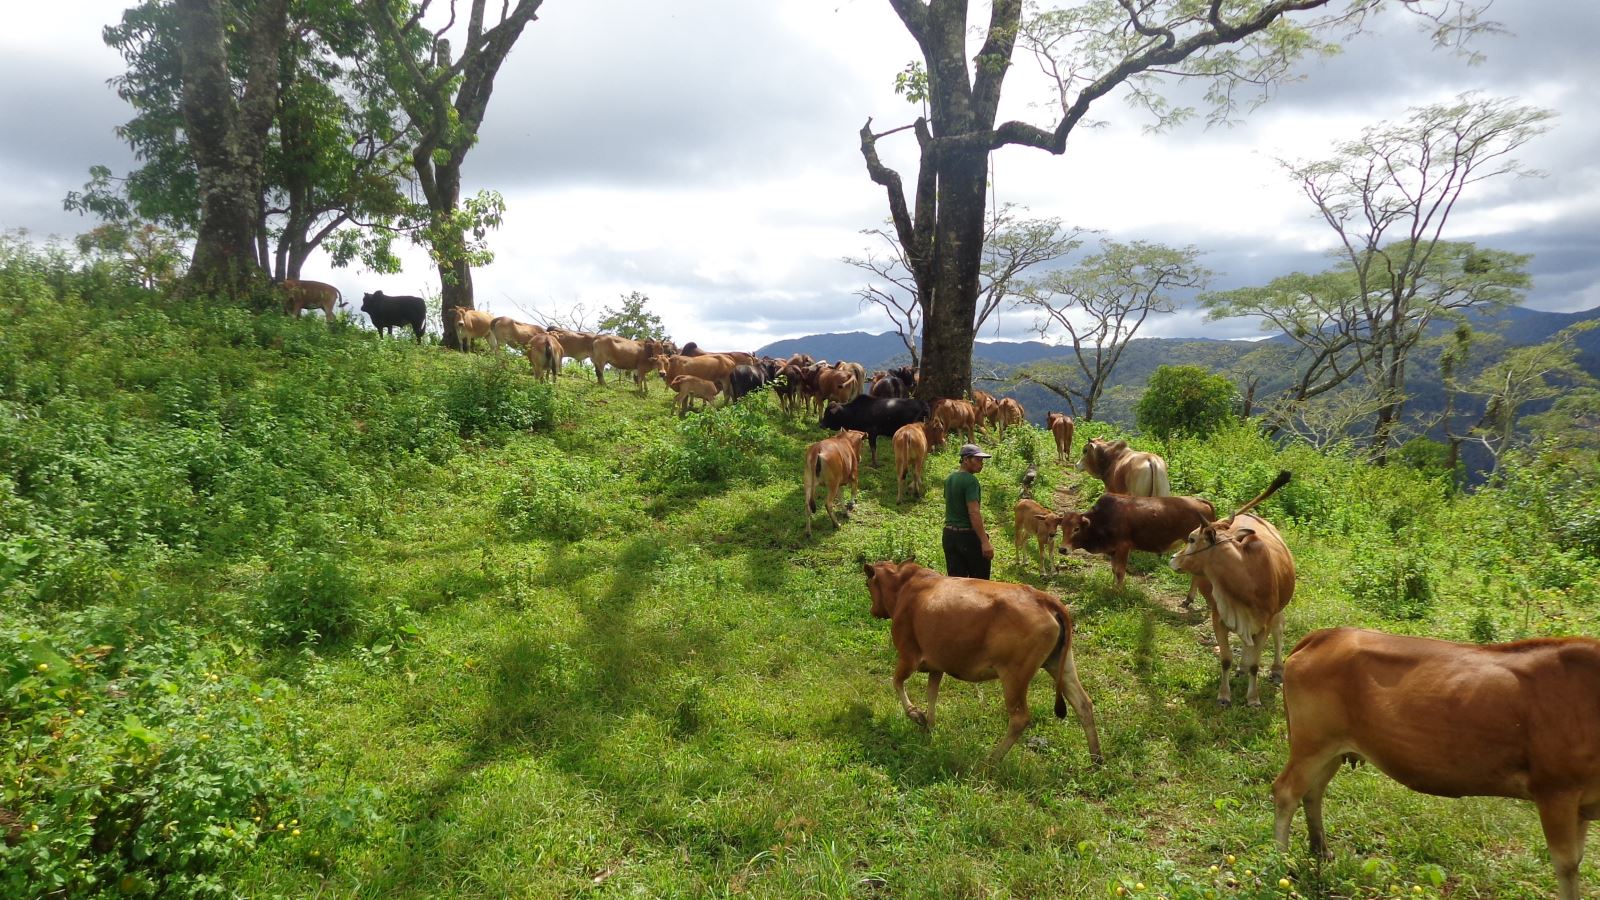 Quy hoạch vùng chăn nuôi gia súc tập trung có quy mô, chuyển từ chăn thả tự nhiên sang chăn nuôi có chuồng trại, gắn với công tác phòng, chống dịch bệnh